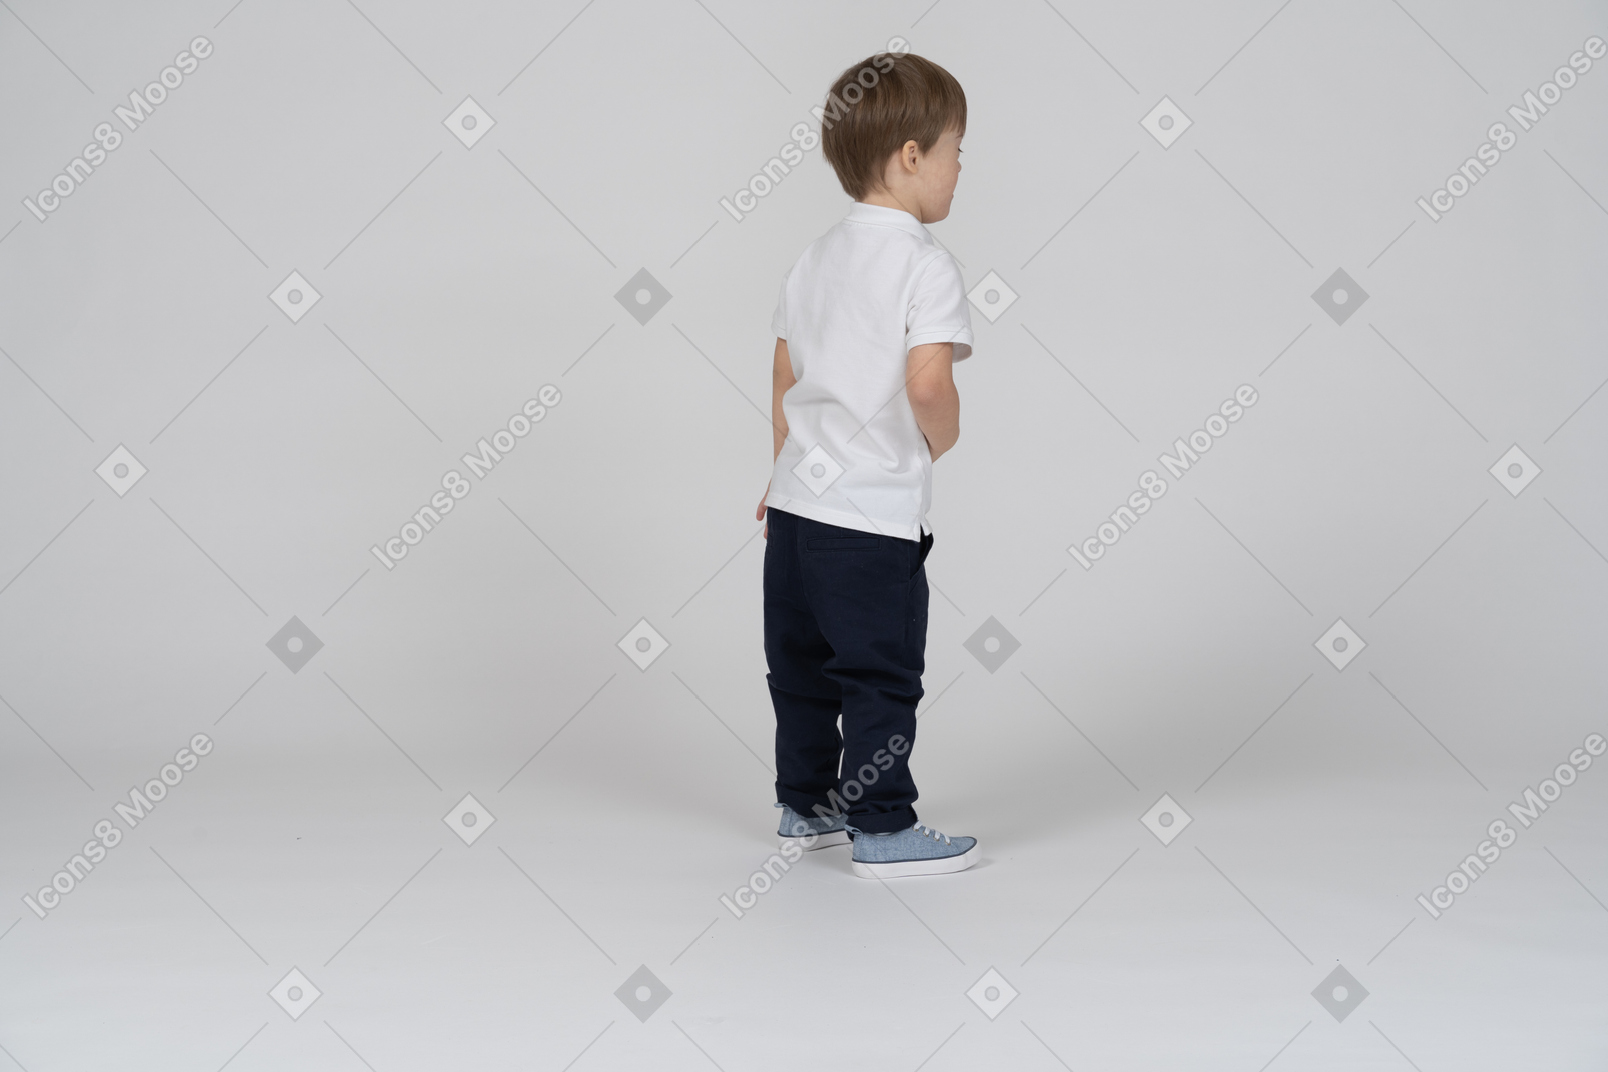 Vista traseira do menino em pé com a mão na barriga